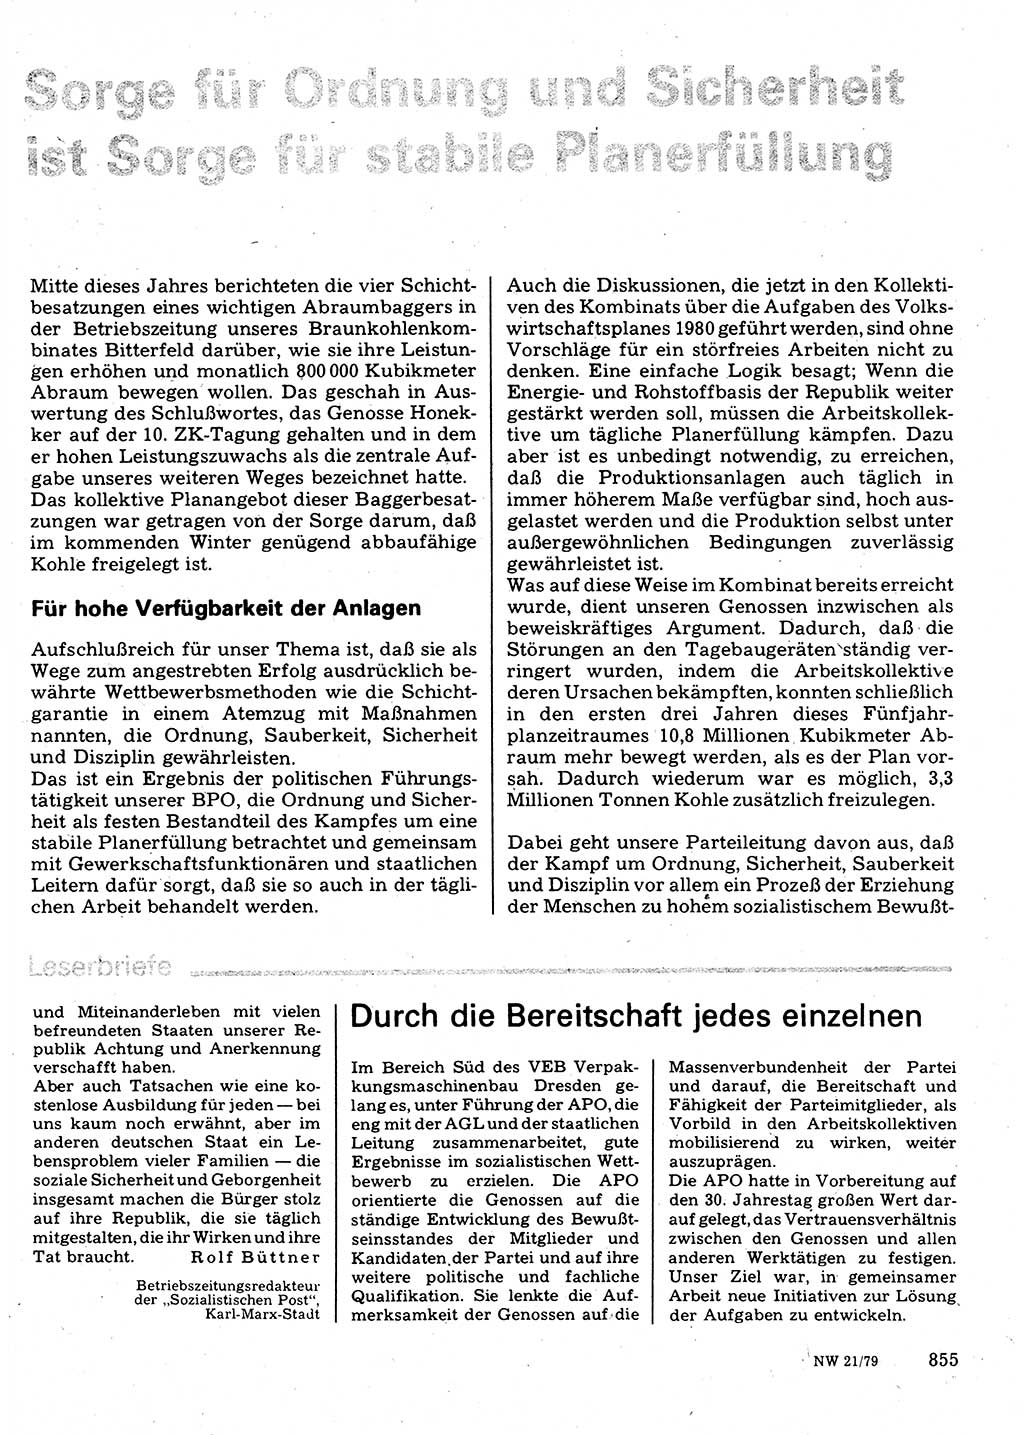 Neuer Weg (NW), Organ des Zentralkomitees (ZK) der SED (Sozialistische Einheitspartei Deutschlands) für Fragen des Parteilebens, 34. Jahrgang [Deutsche Demokratische Republik (DDR)] 1979, Seite 855 (NW ZK SED DDR 1979, S. 855)